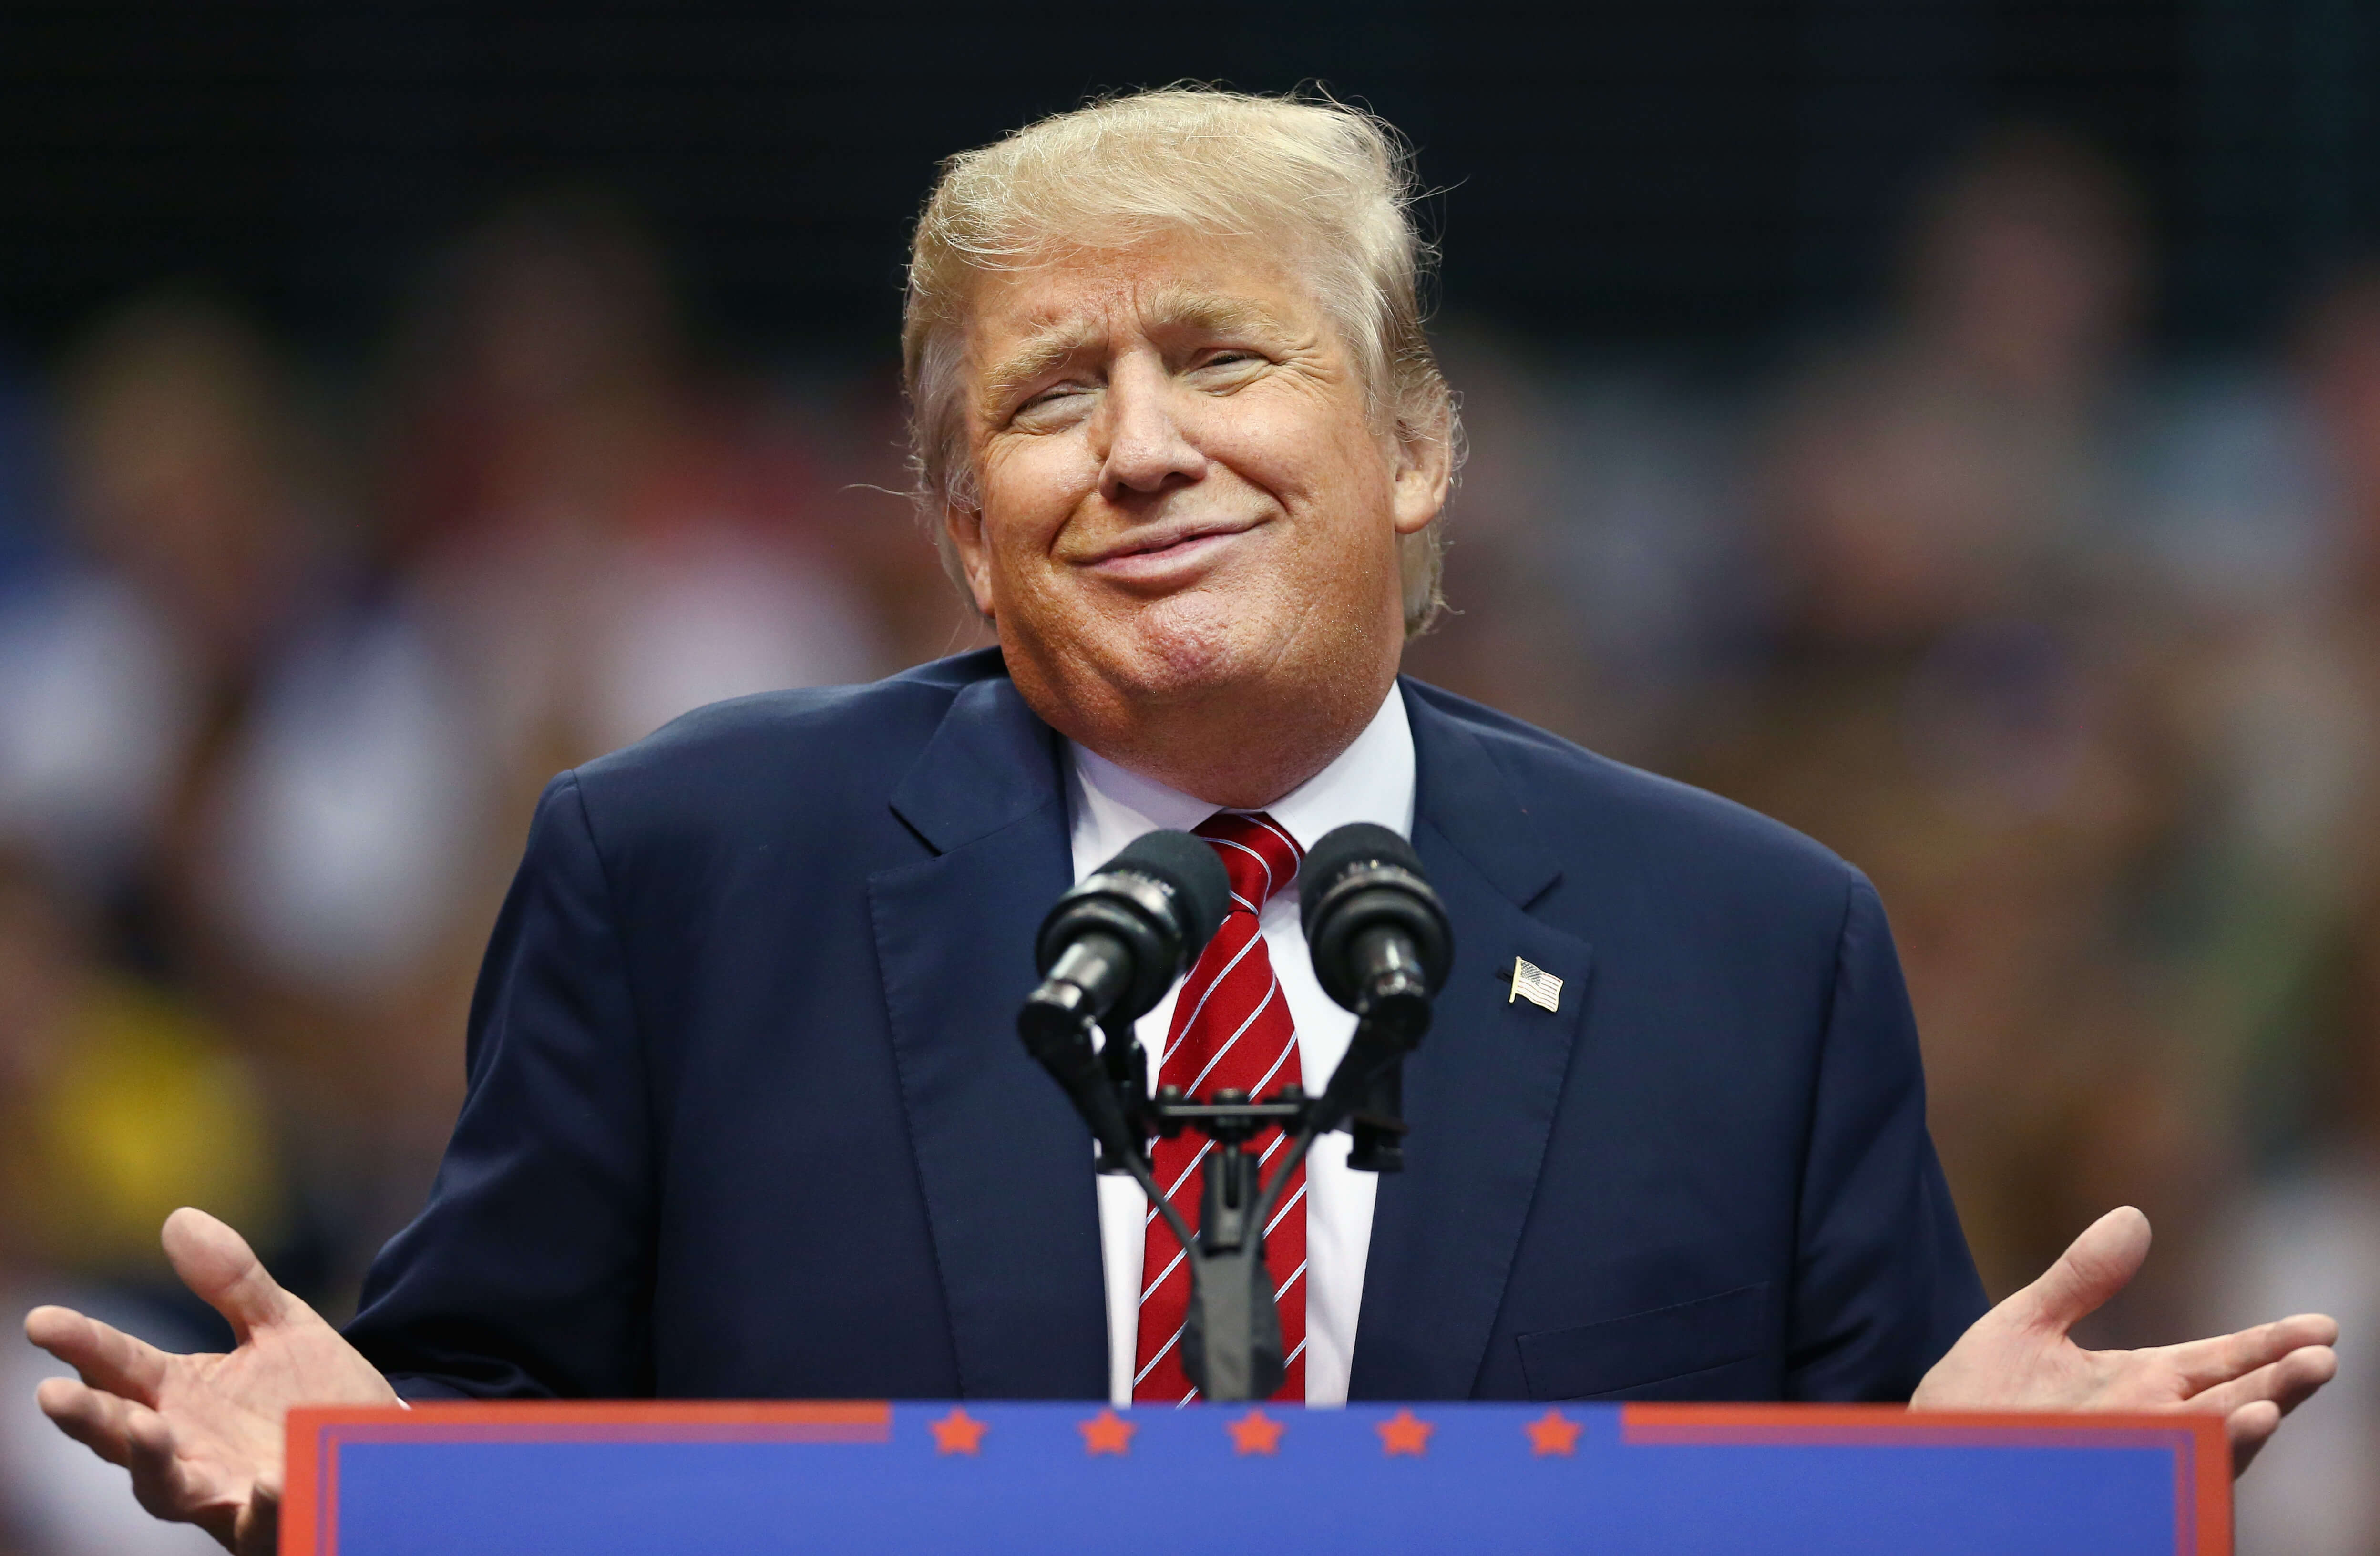 El presidente Donald Trump durante un acto de campaña en el American Airlines cuando era candidato presidencial republicano. (Getty Images/archivo)